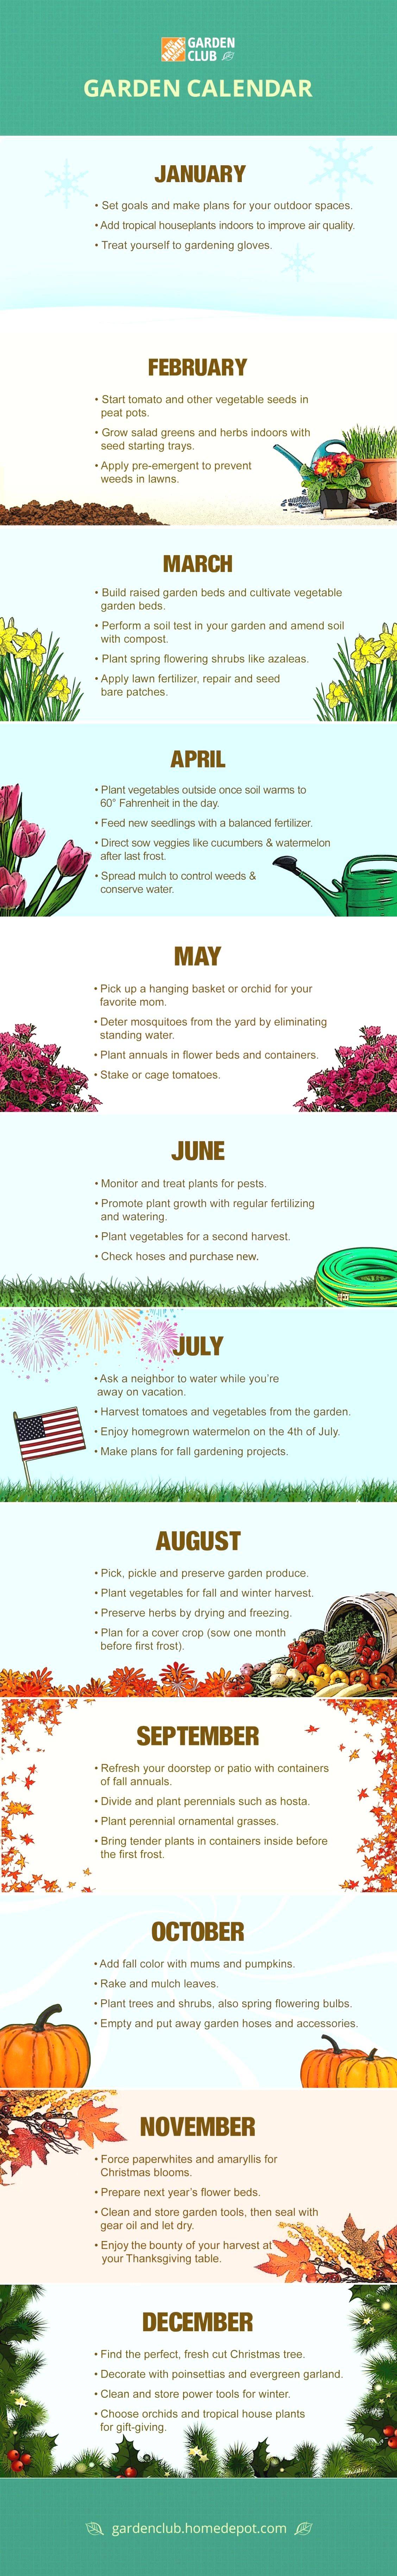 The Garden Garden Calendar